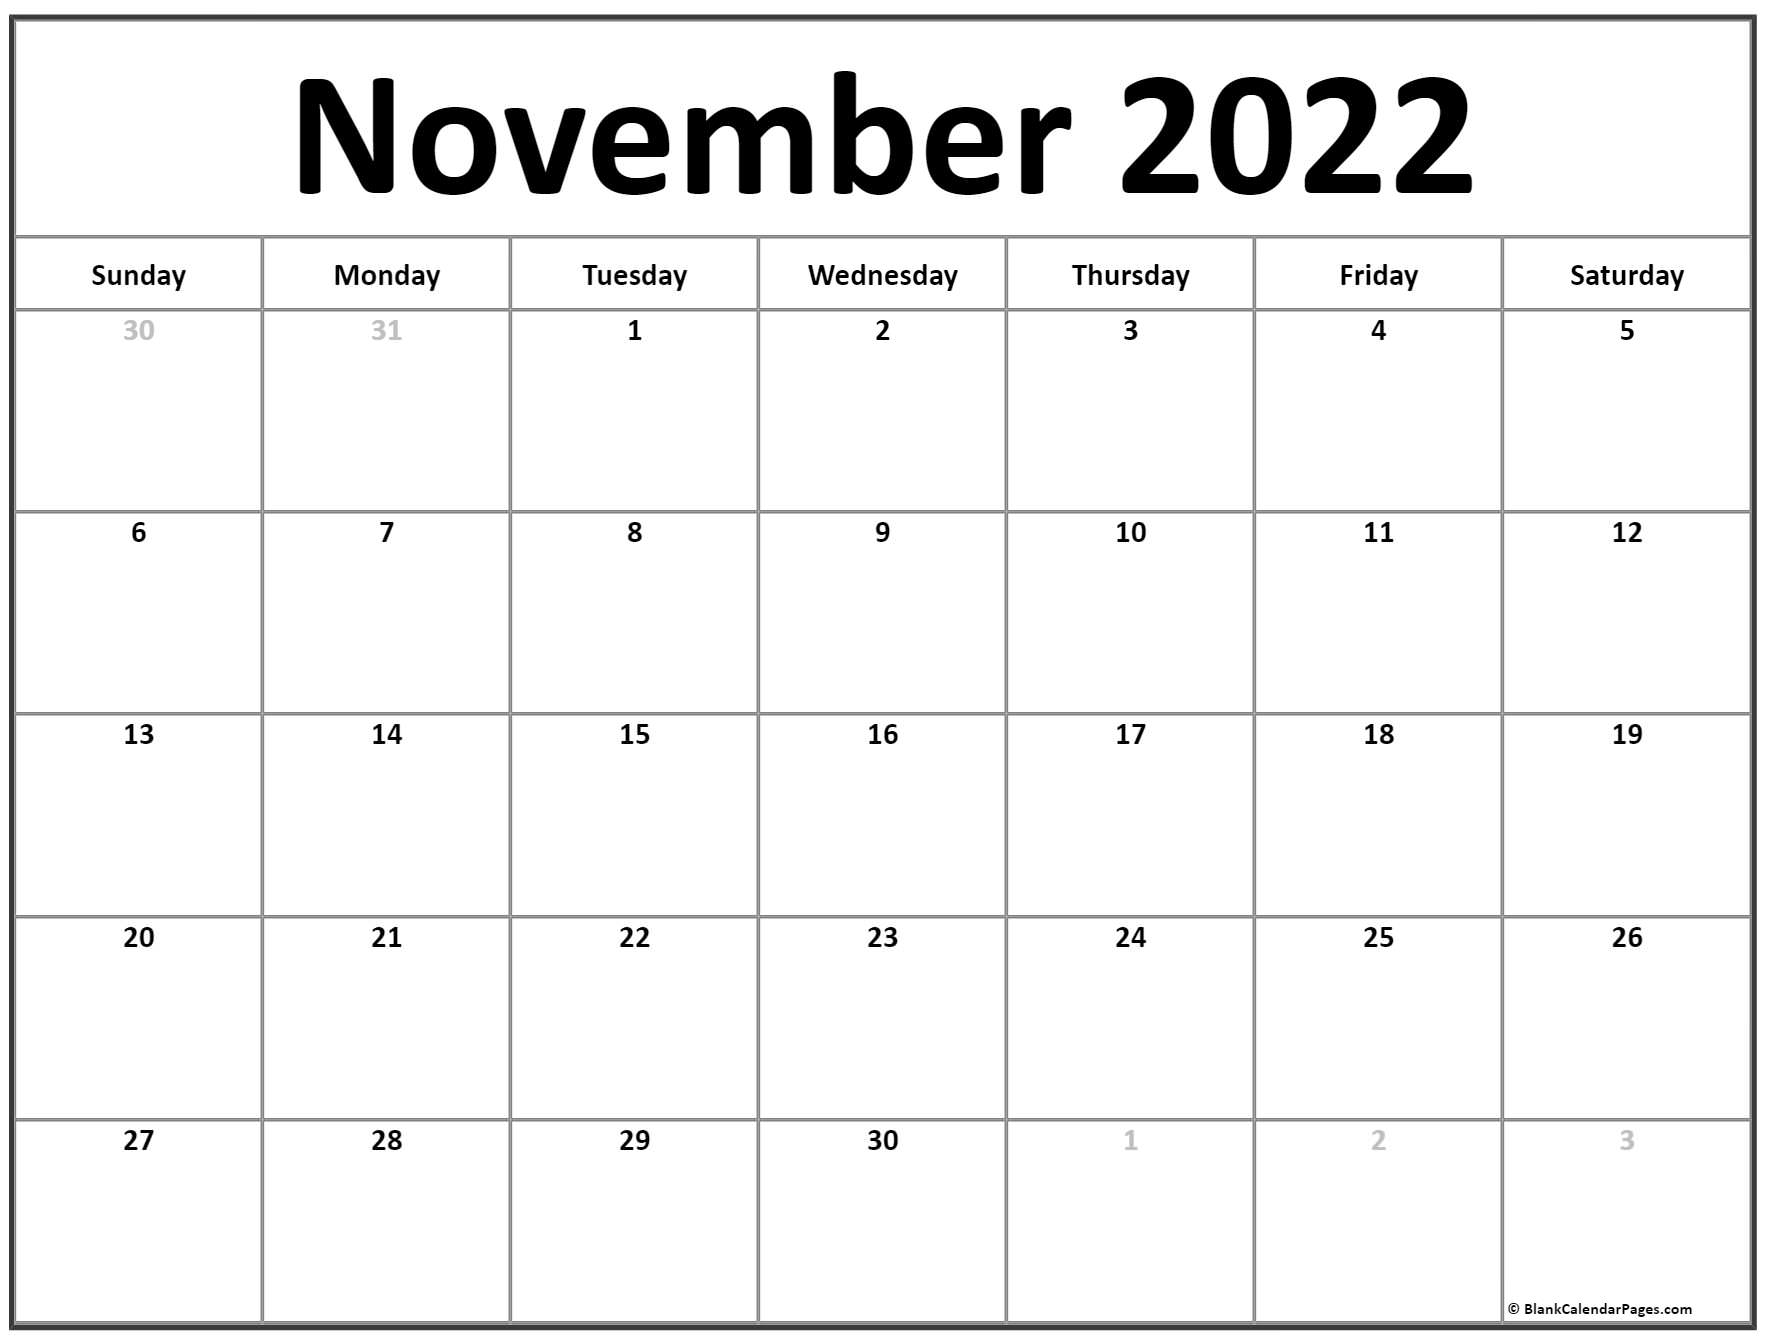 November 2022 Calendar | Free Printable Calendar Templates